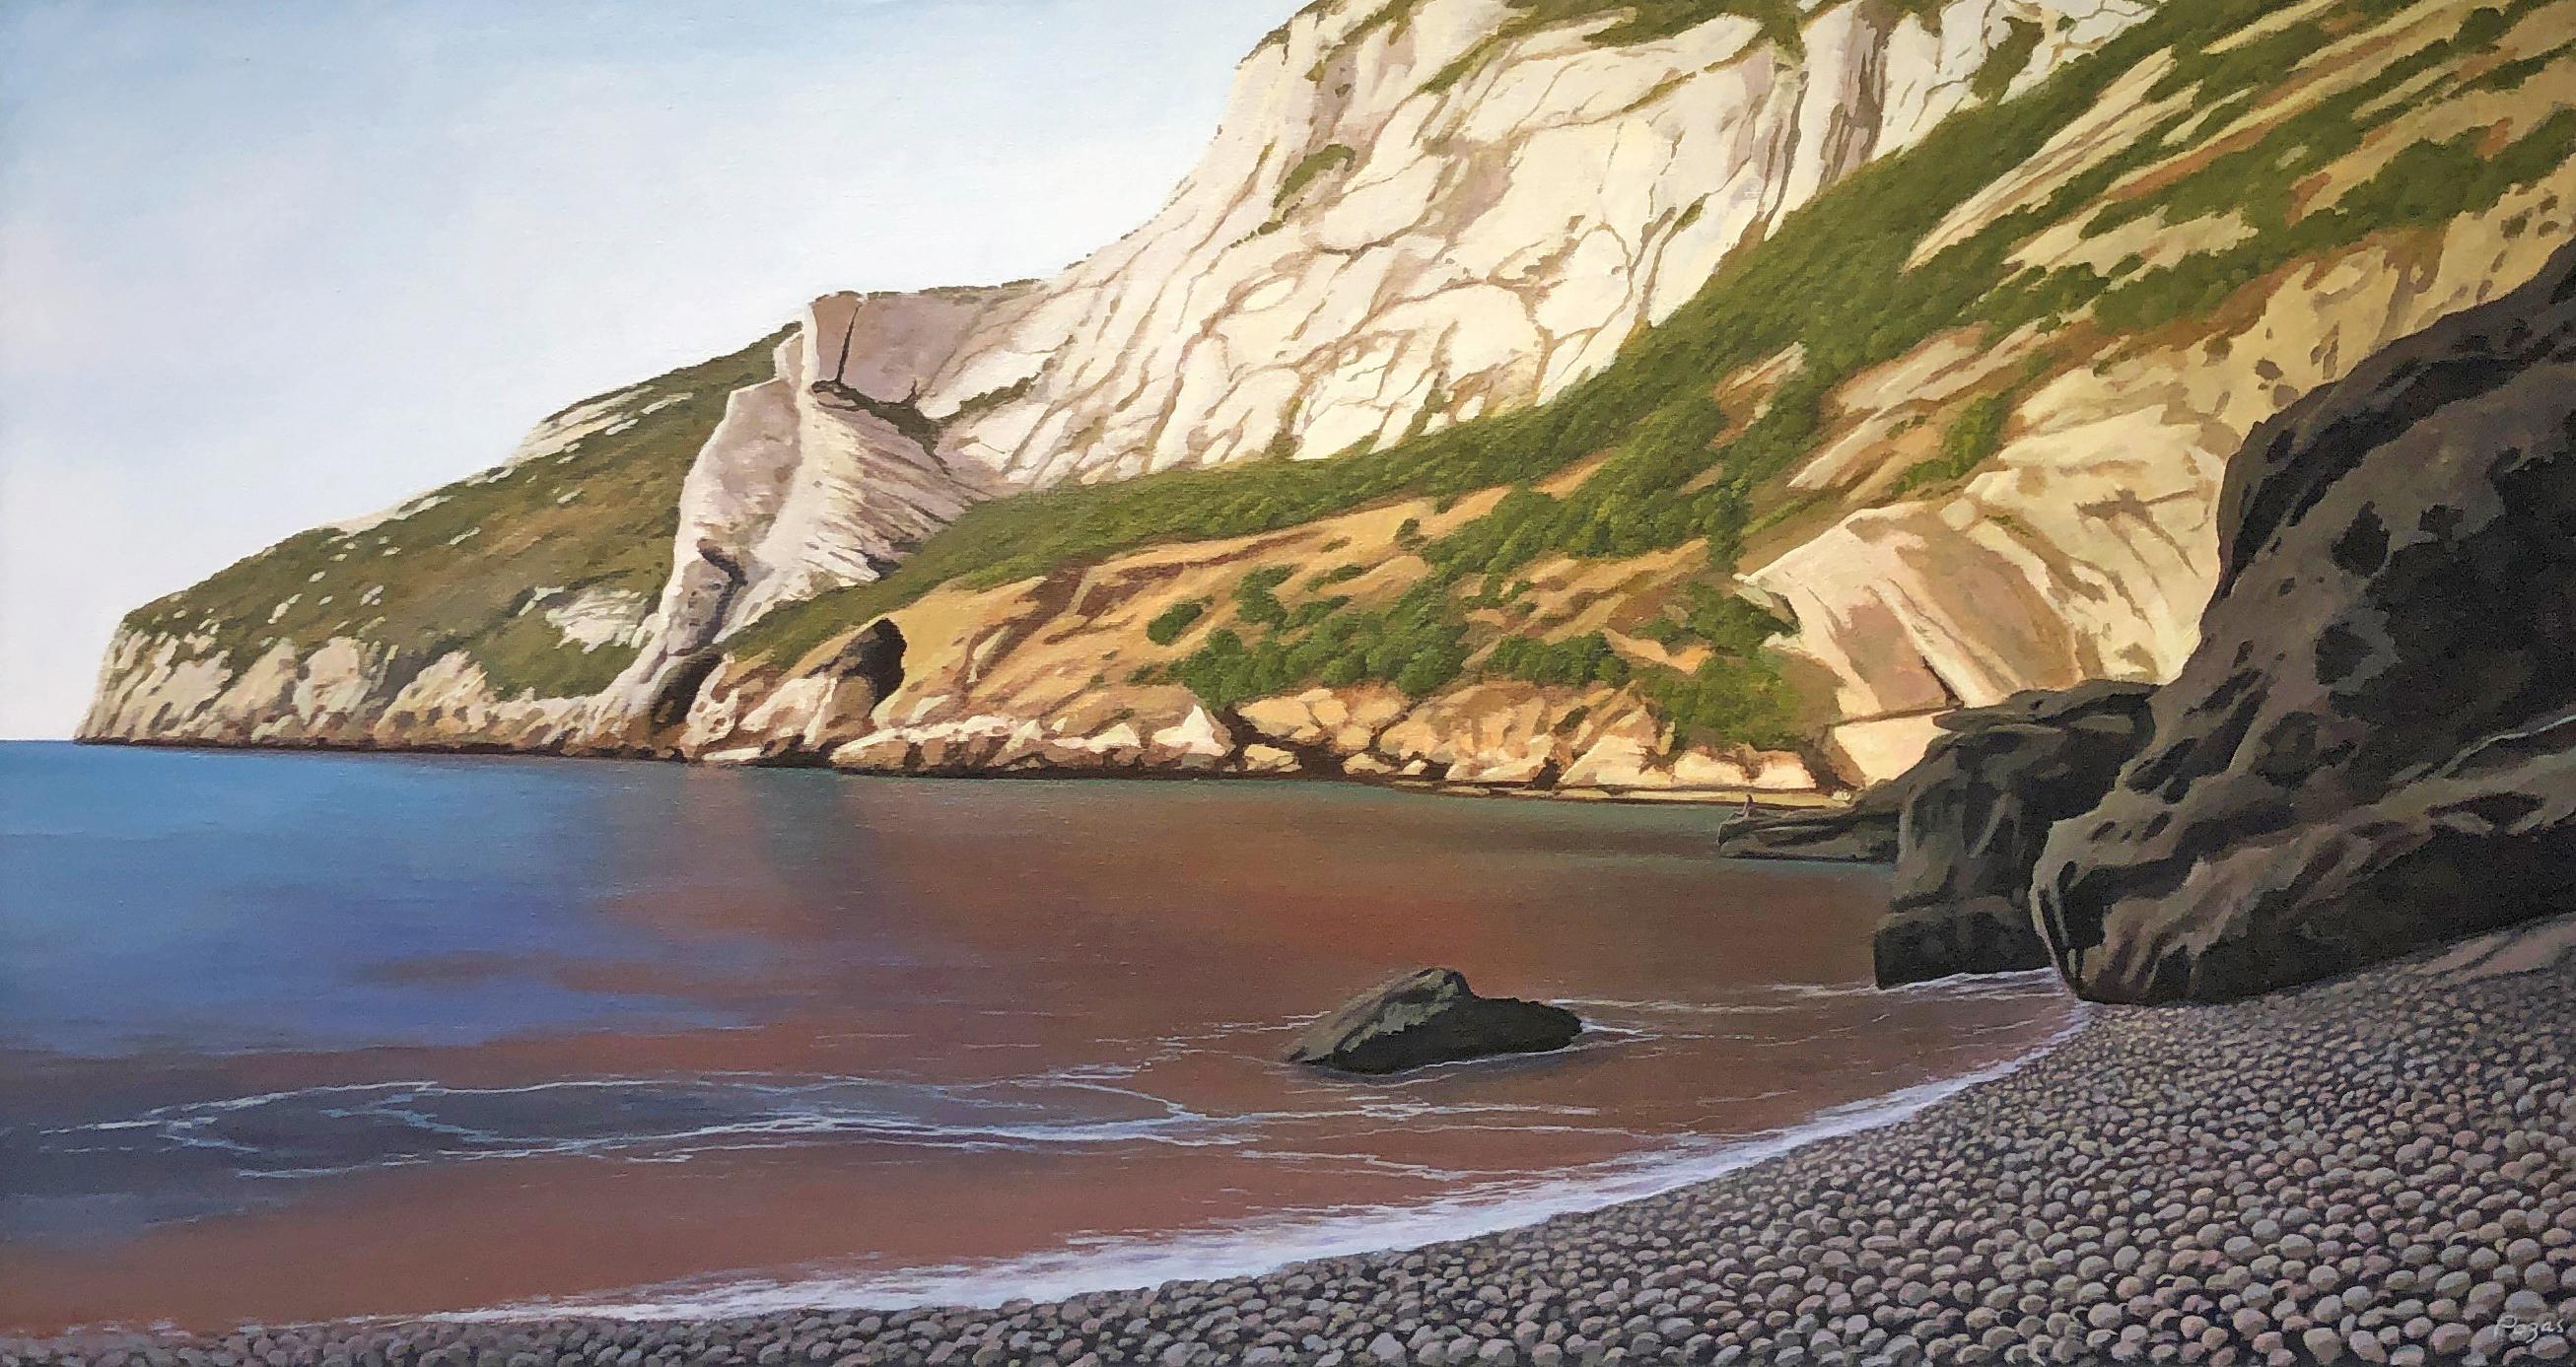 Landscape Painting René Monzón Relova “Pozas” -  Cala Granadella, Cliffs rocheux plongant dans l'océan, paysage surréaliste détaillé